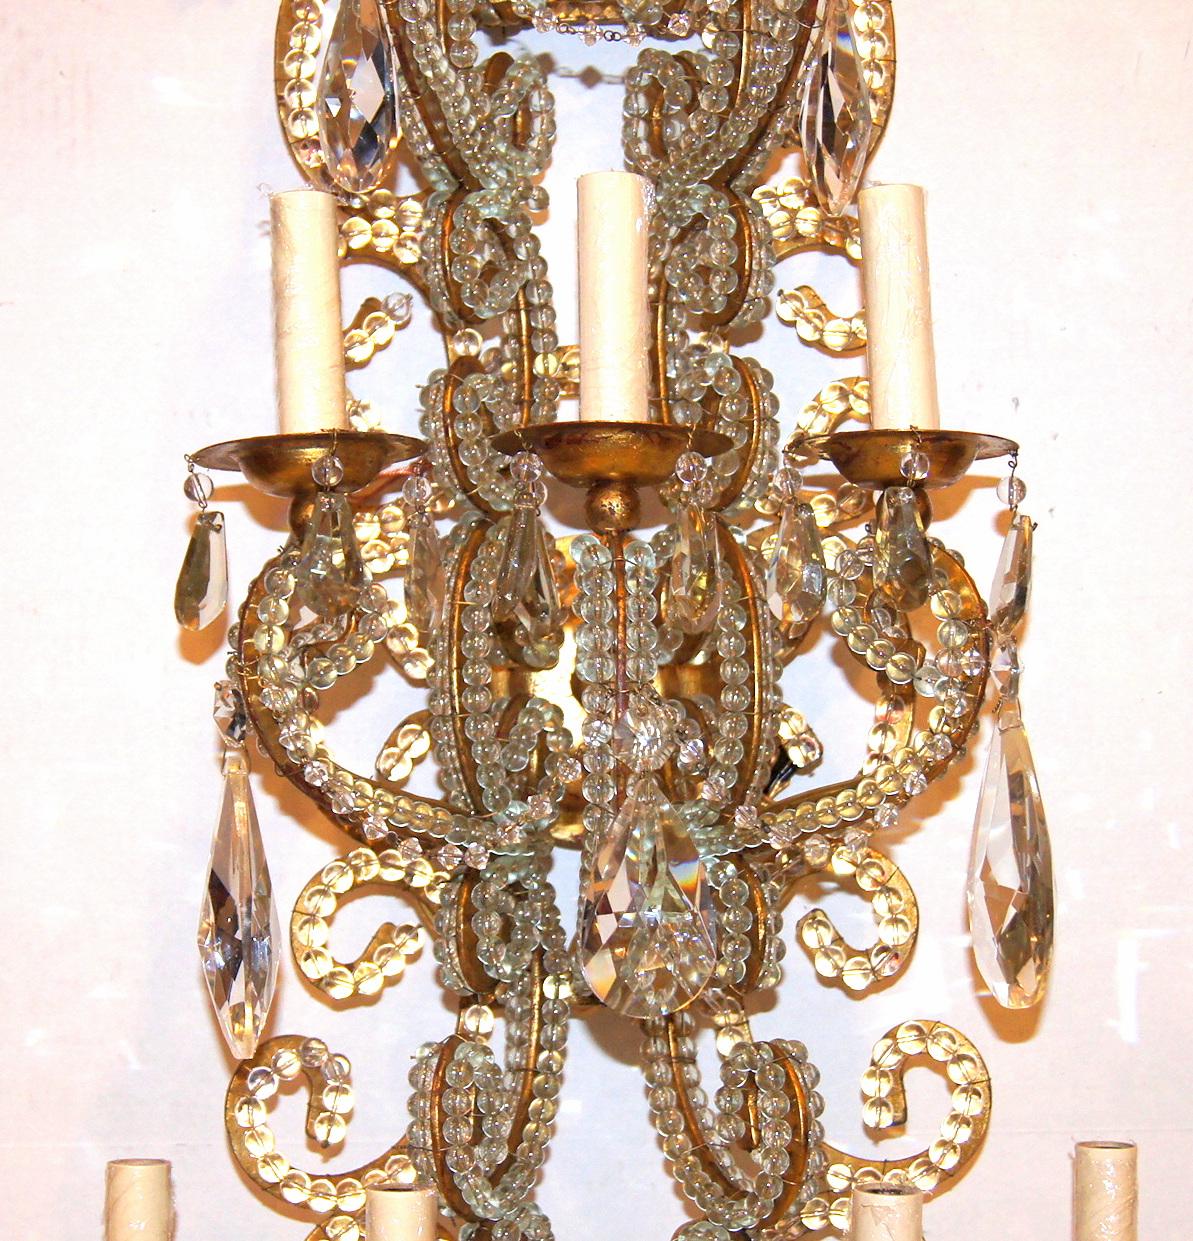 Satz von vier großen italienischen neunarmigen Wandleuchtern aus vergoldetem Metall und Kristall aus den 1940er Jahren mit Originalpatina. Verkauft in Paaren.

Abmessungen:
Höhe: 41,5